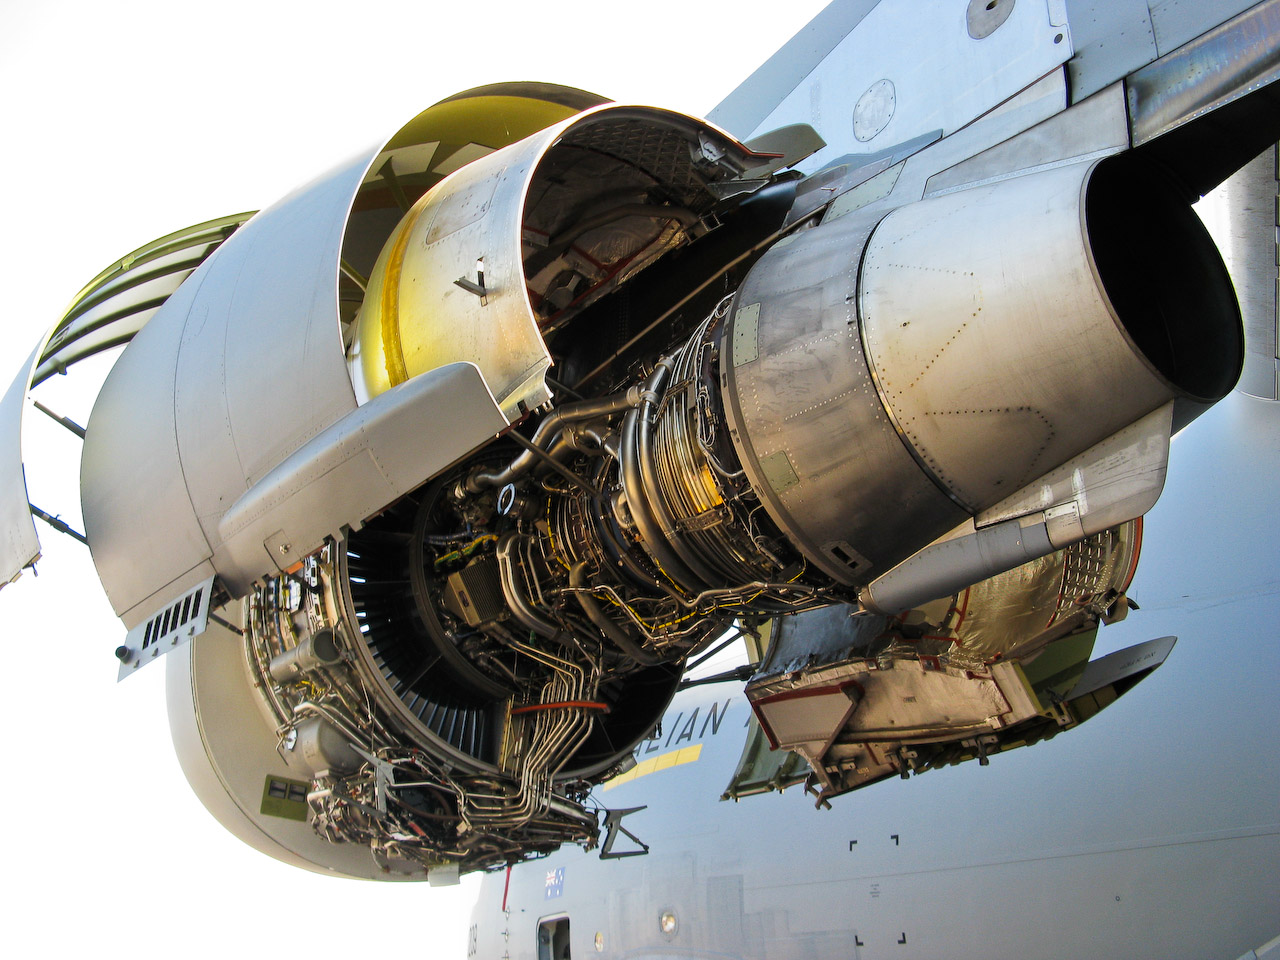 C-17 Engine, C-17 Facts